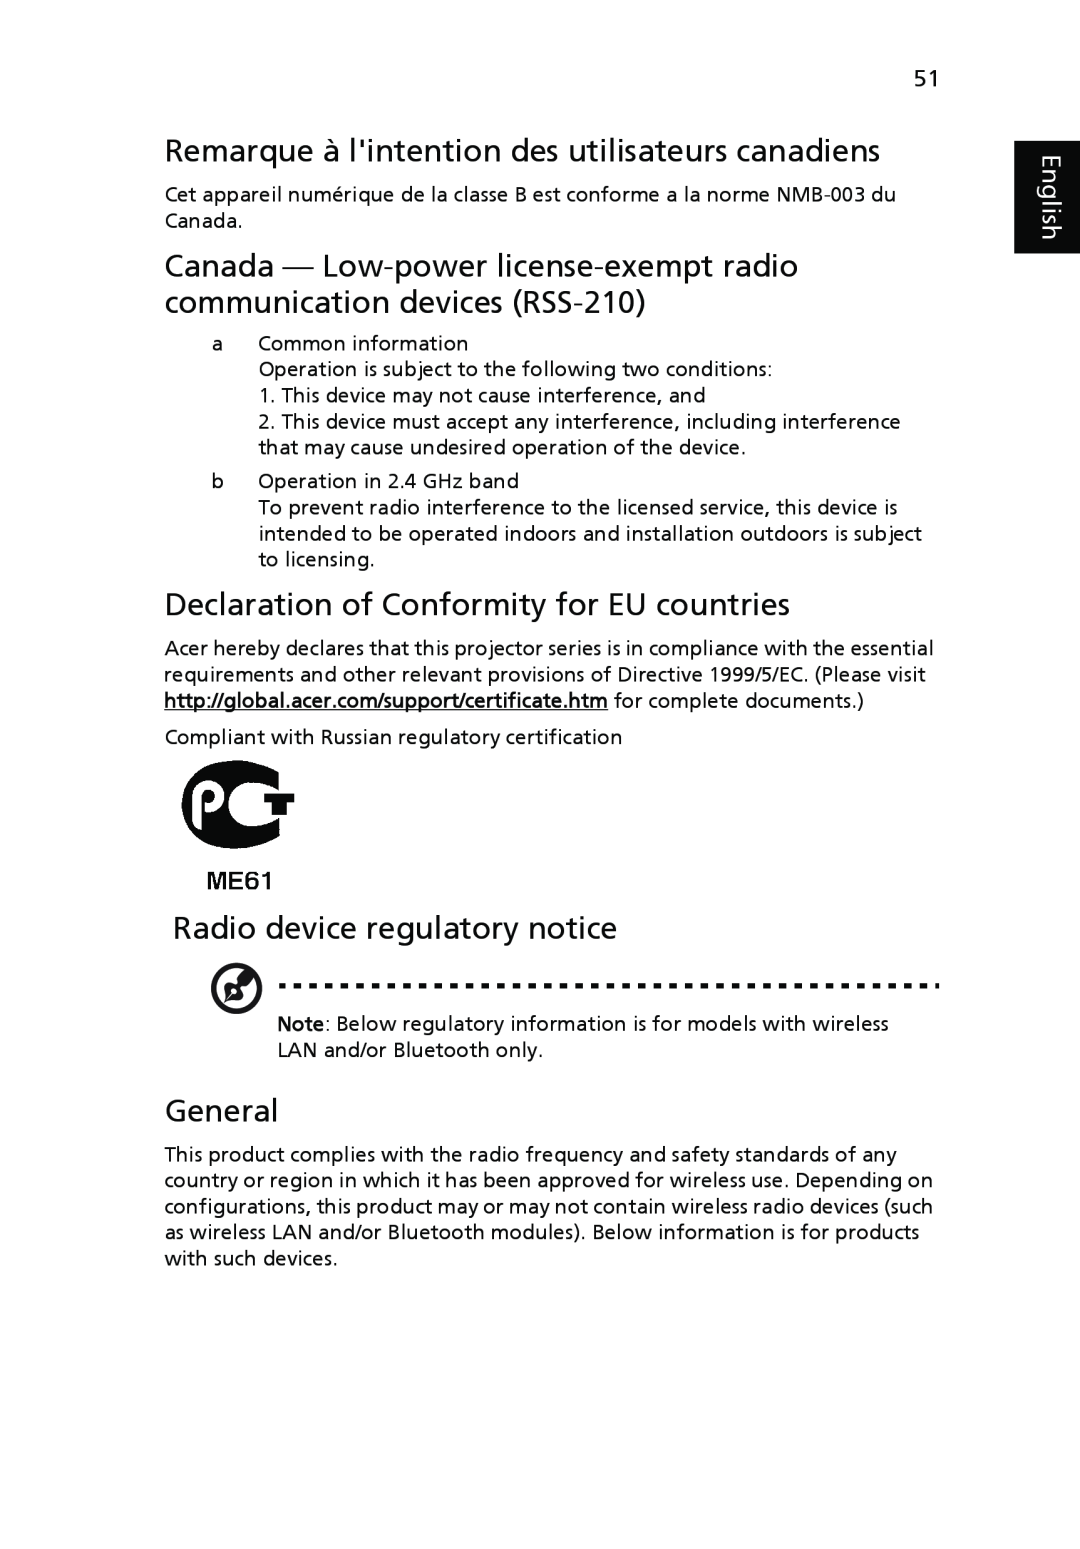 Acer P5270 Remarque à lintention des utilisateurs canadiens, Declaration of Conformity for EU countries, General, English 